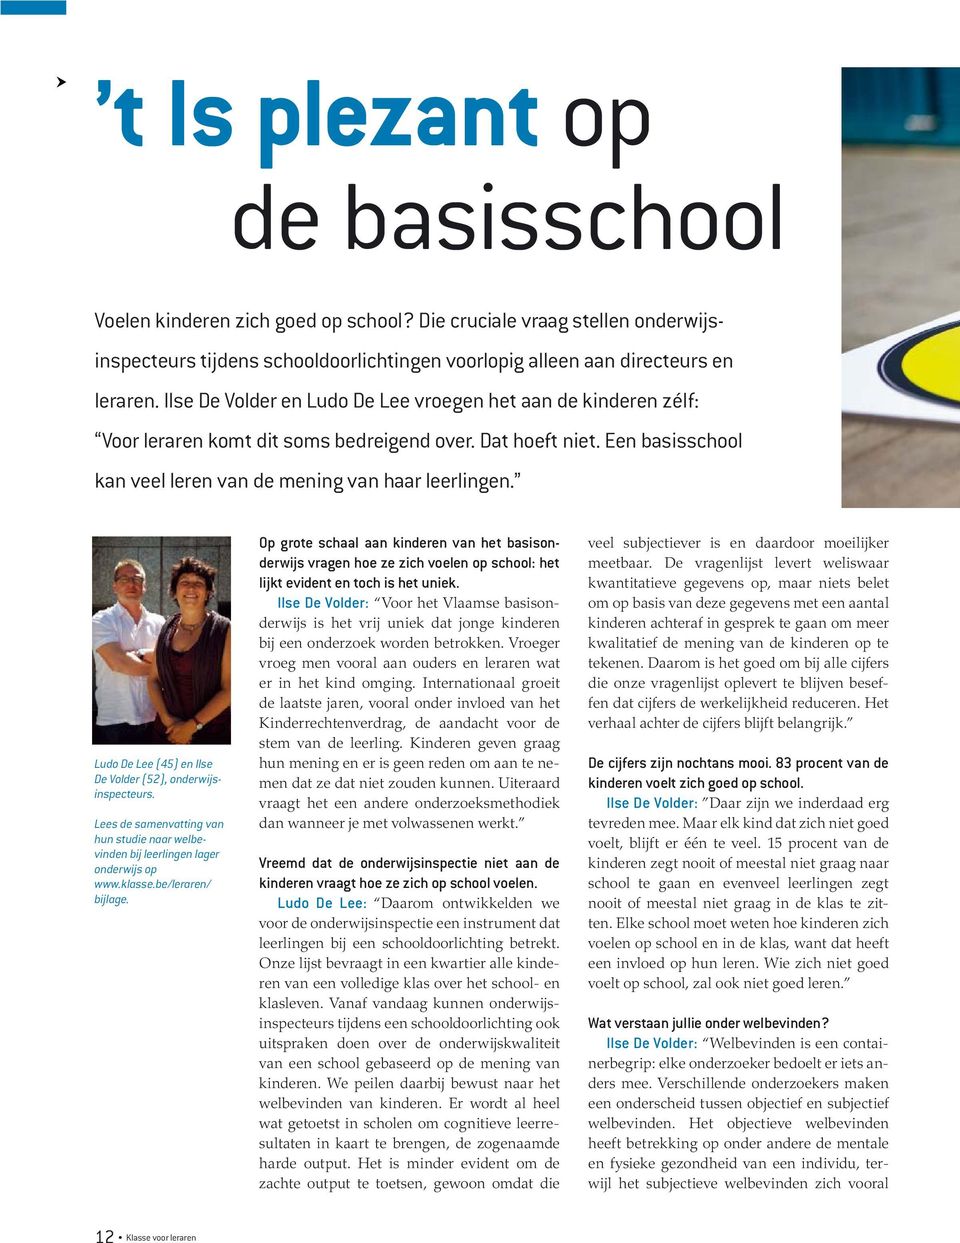 Ludo De Lee (45) en Ilse De Volder (52), onderwijsinspecteurs. Lees de samenvatting van hun studie naar welbevinden bij leerlingen lager onderwijs op www.klasse.be/leraren/ bijlage.